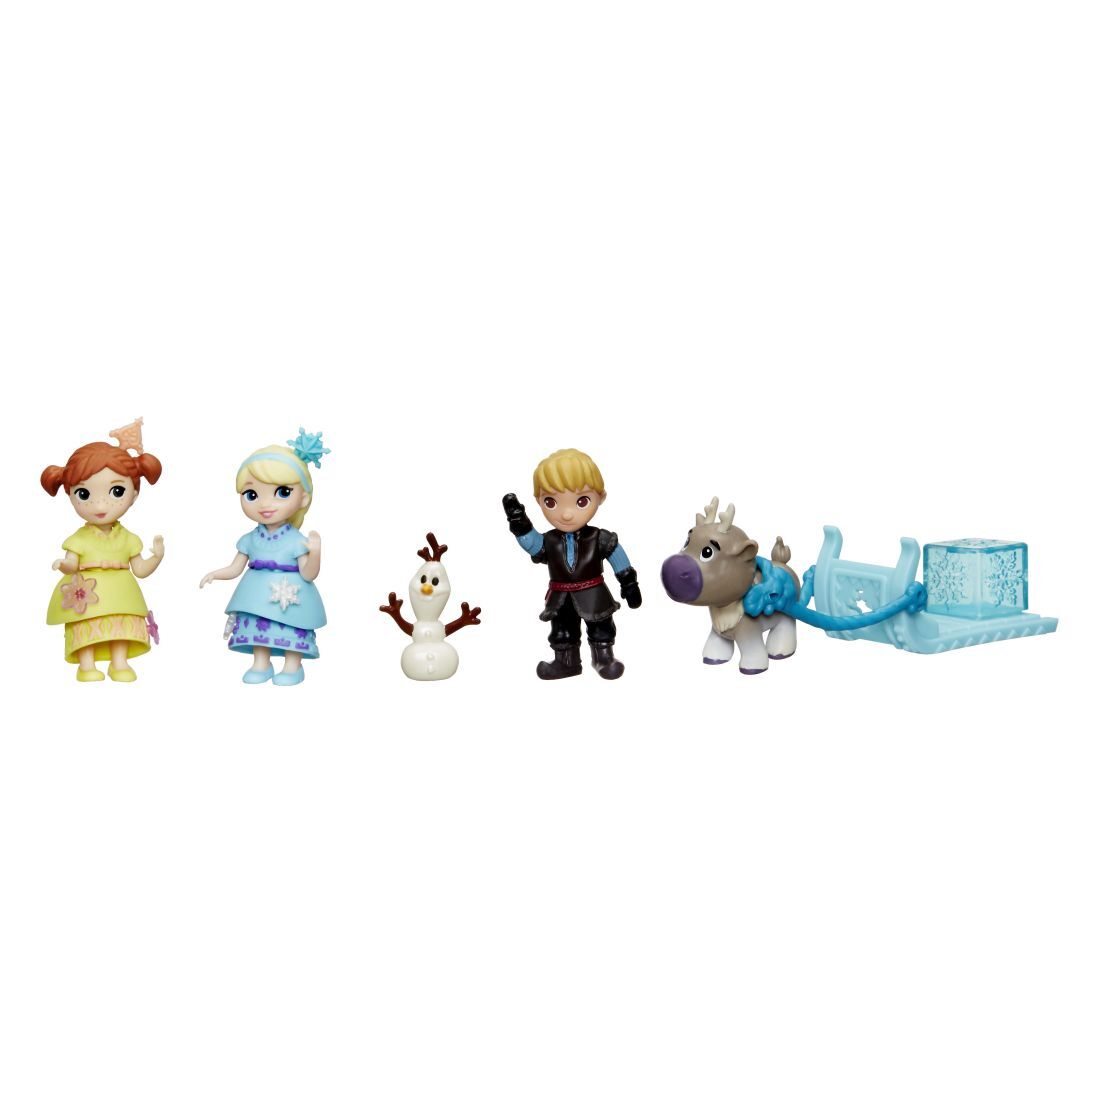 Pachet de colectie cu mini papusi Disney Frozen